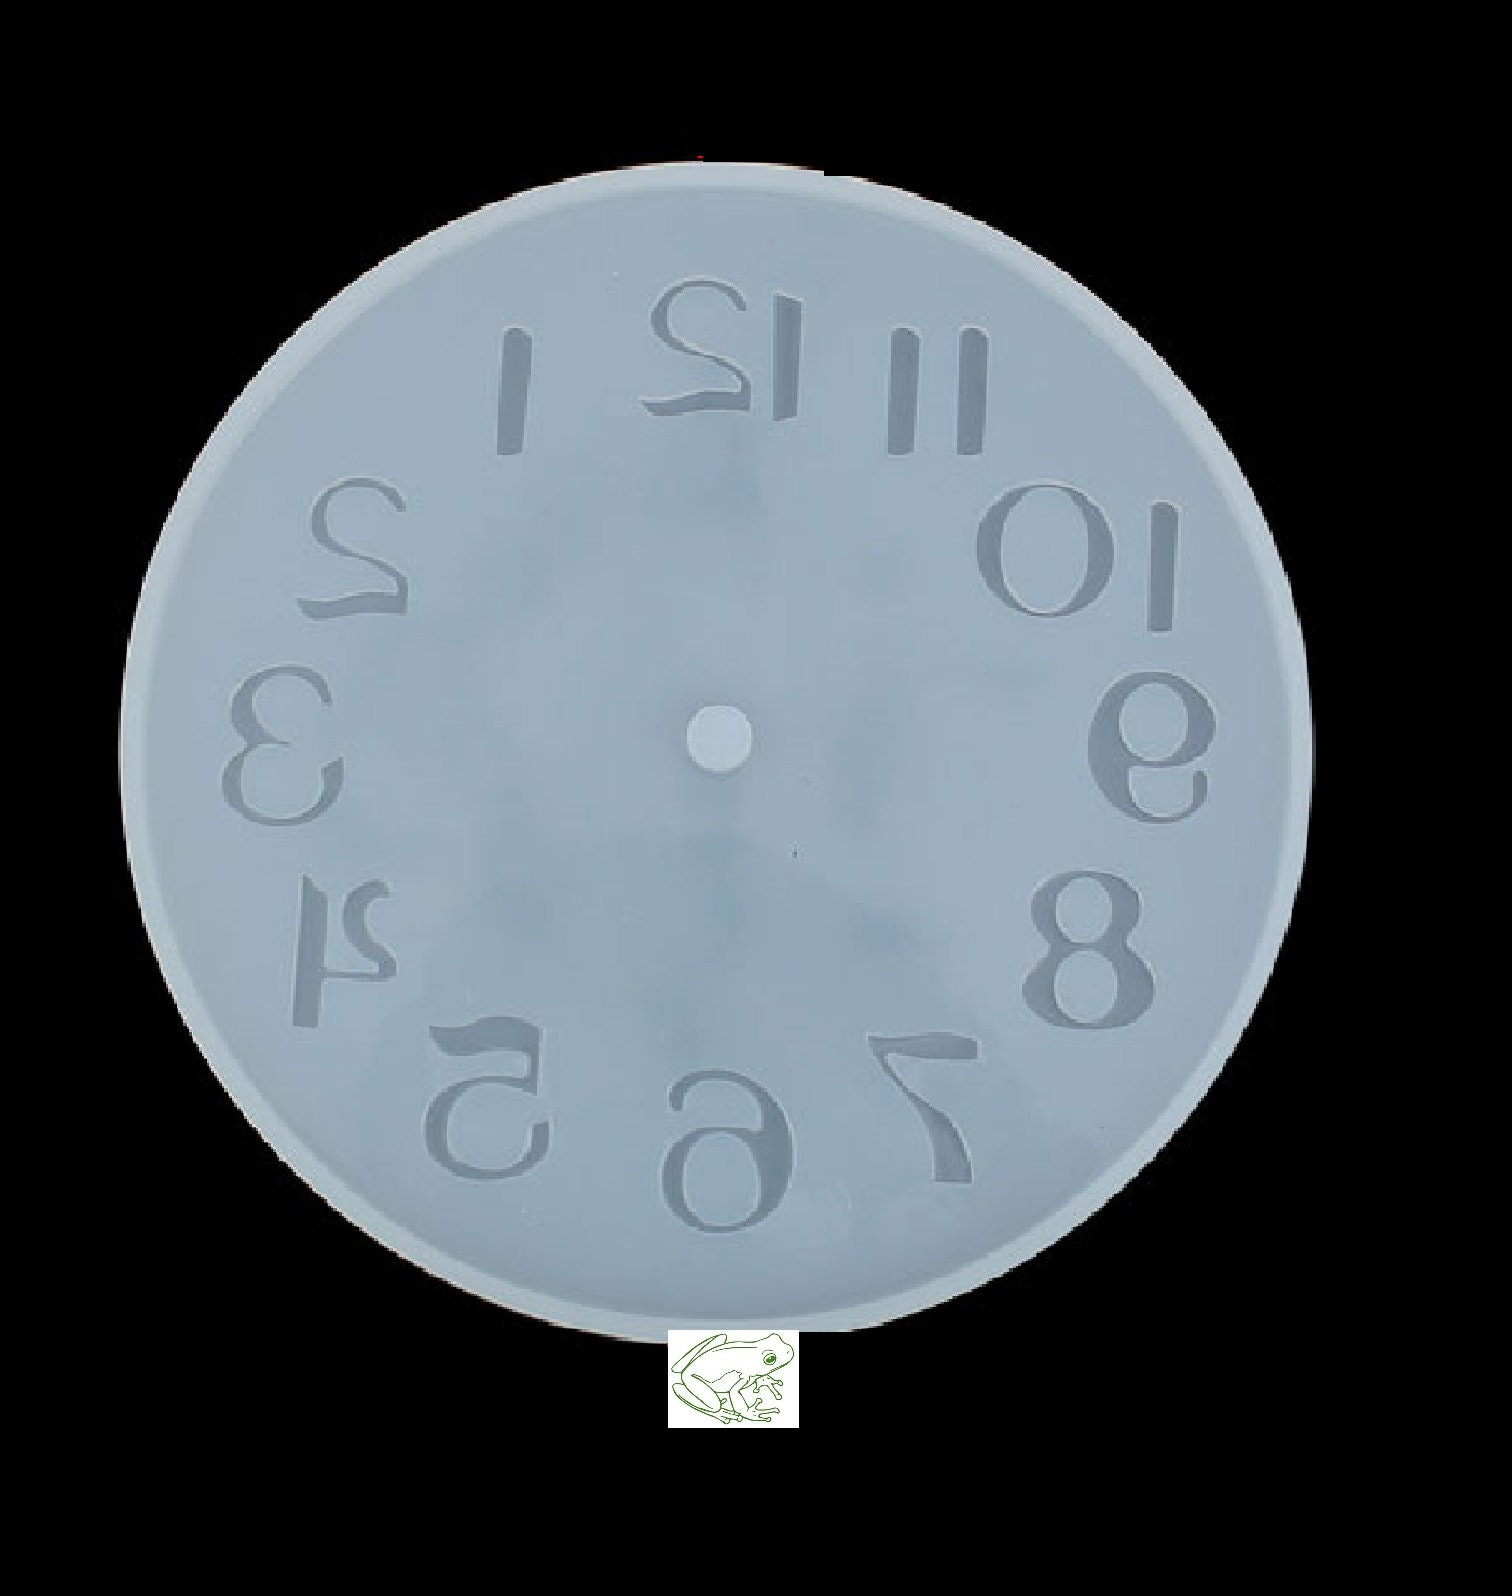 Clock Mold, Flower Clock Resin Mold, Roman Numerals Constellation